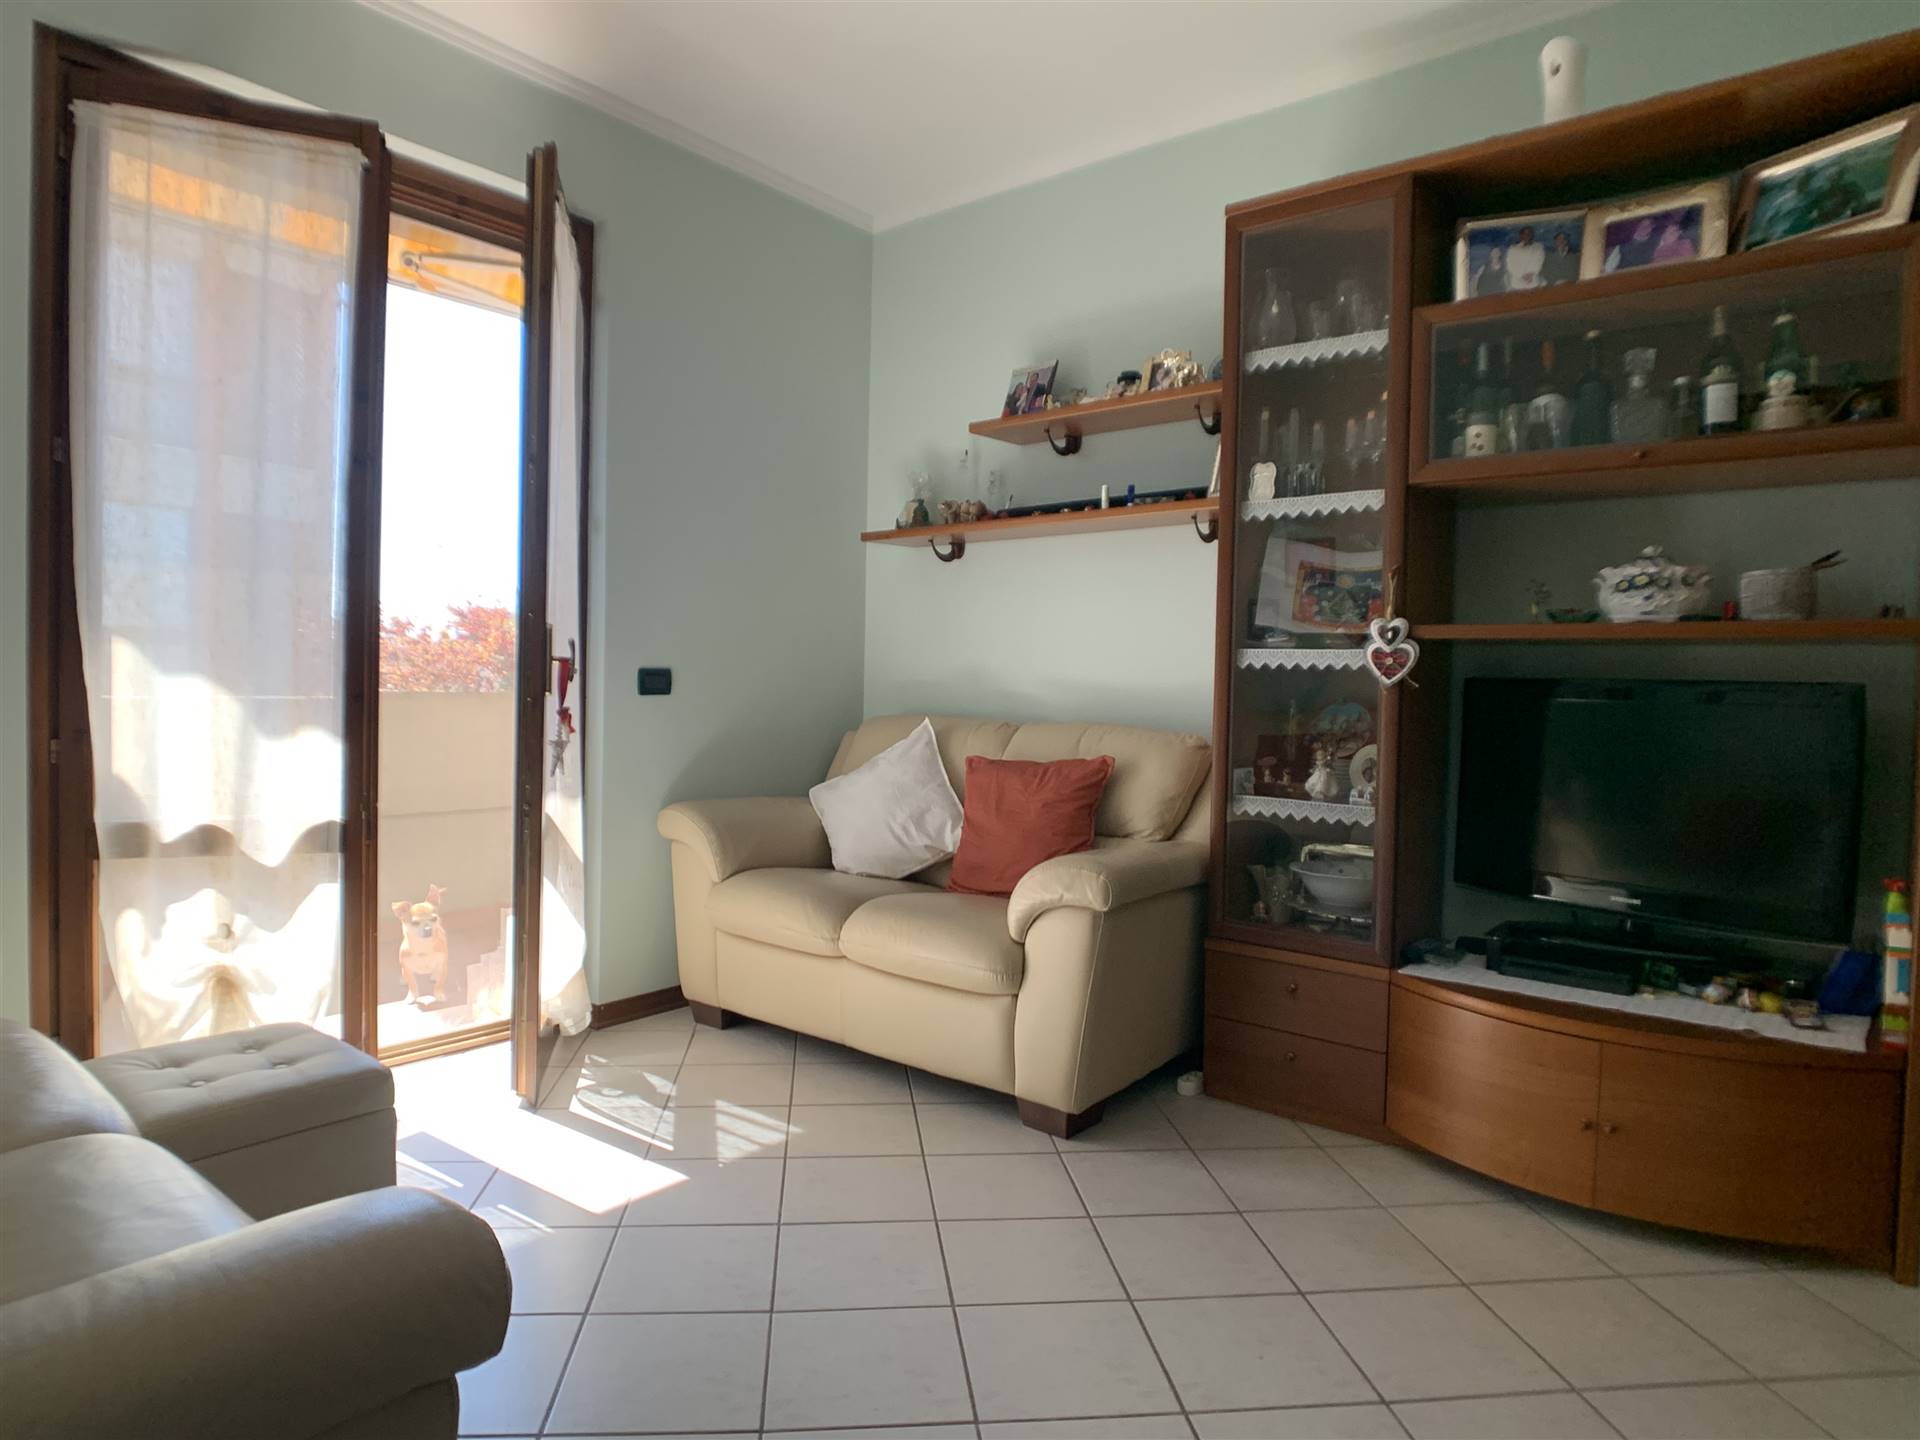 Appartamento in vendita a Pieve a Nievole - Zona: Appalto Via Nova